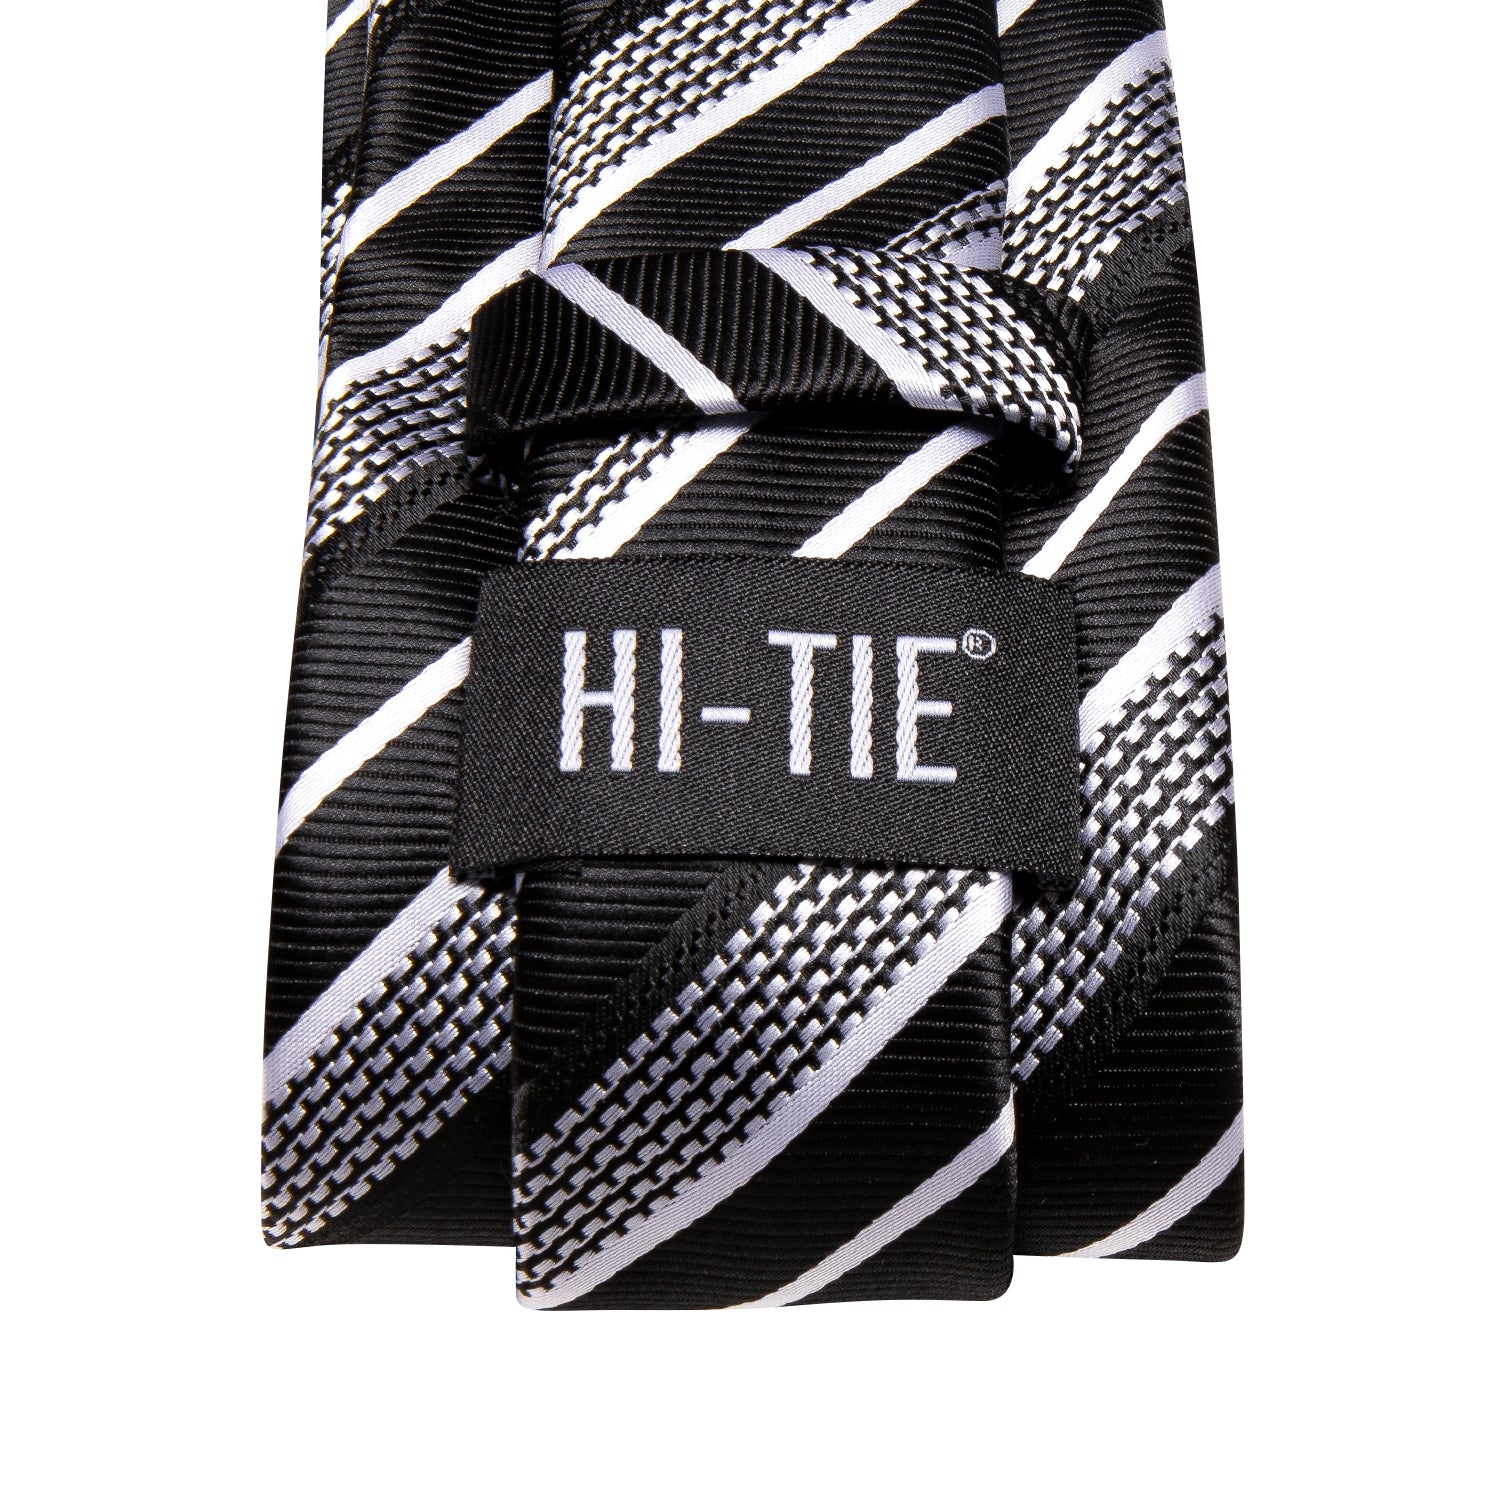 New Black White Strip Necktie Pocket Square Cufflinks Set